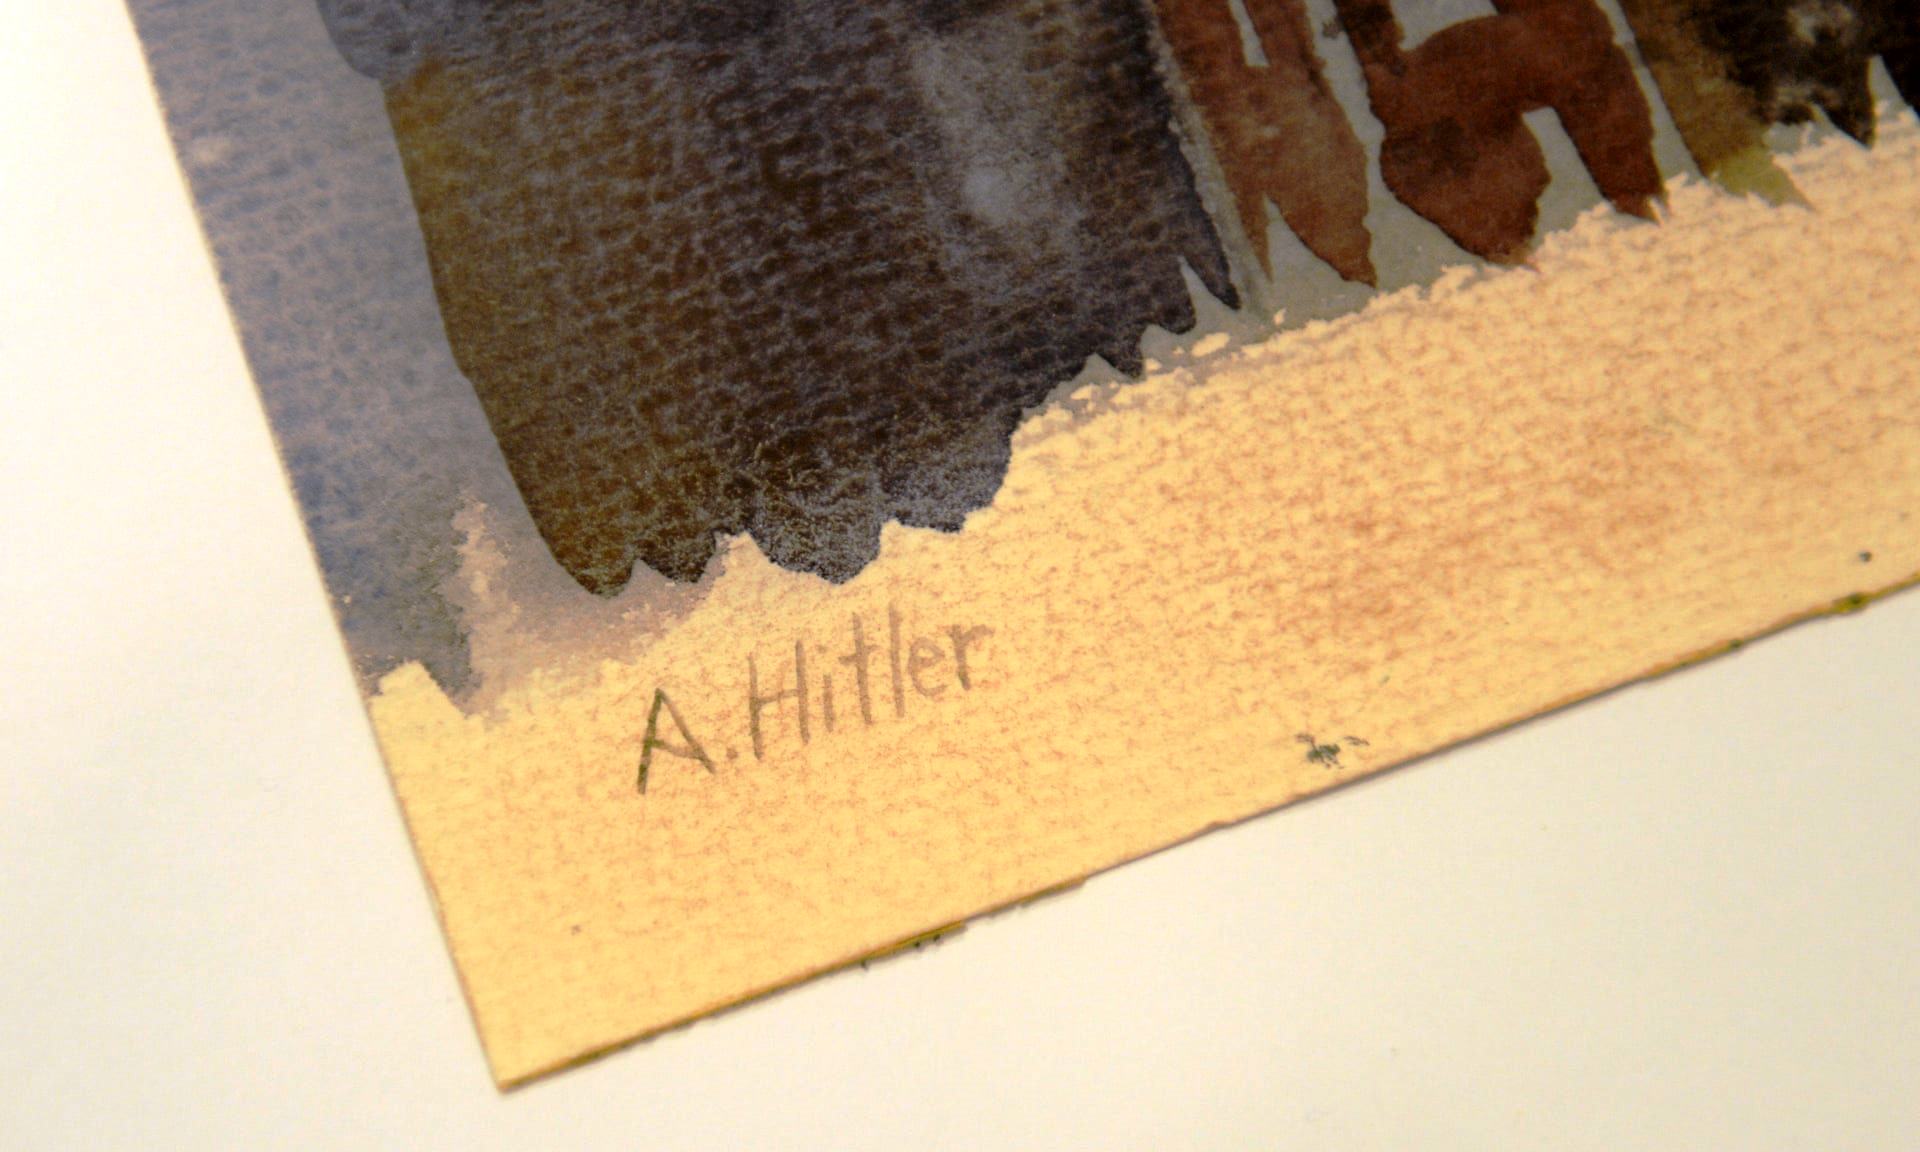 توقيع هتلر يذيّل احدى اللوحات المعروضة في المزاد